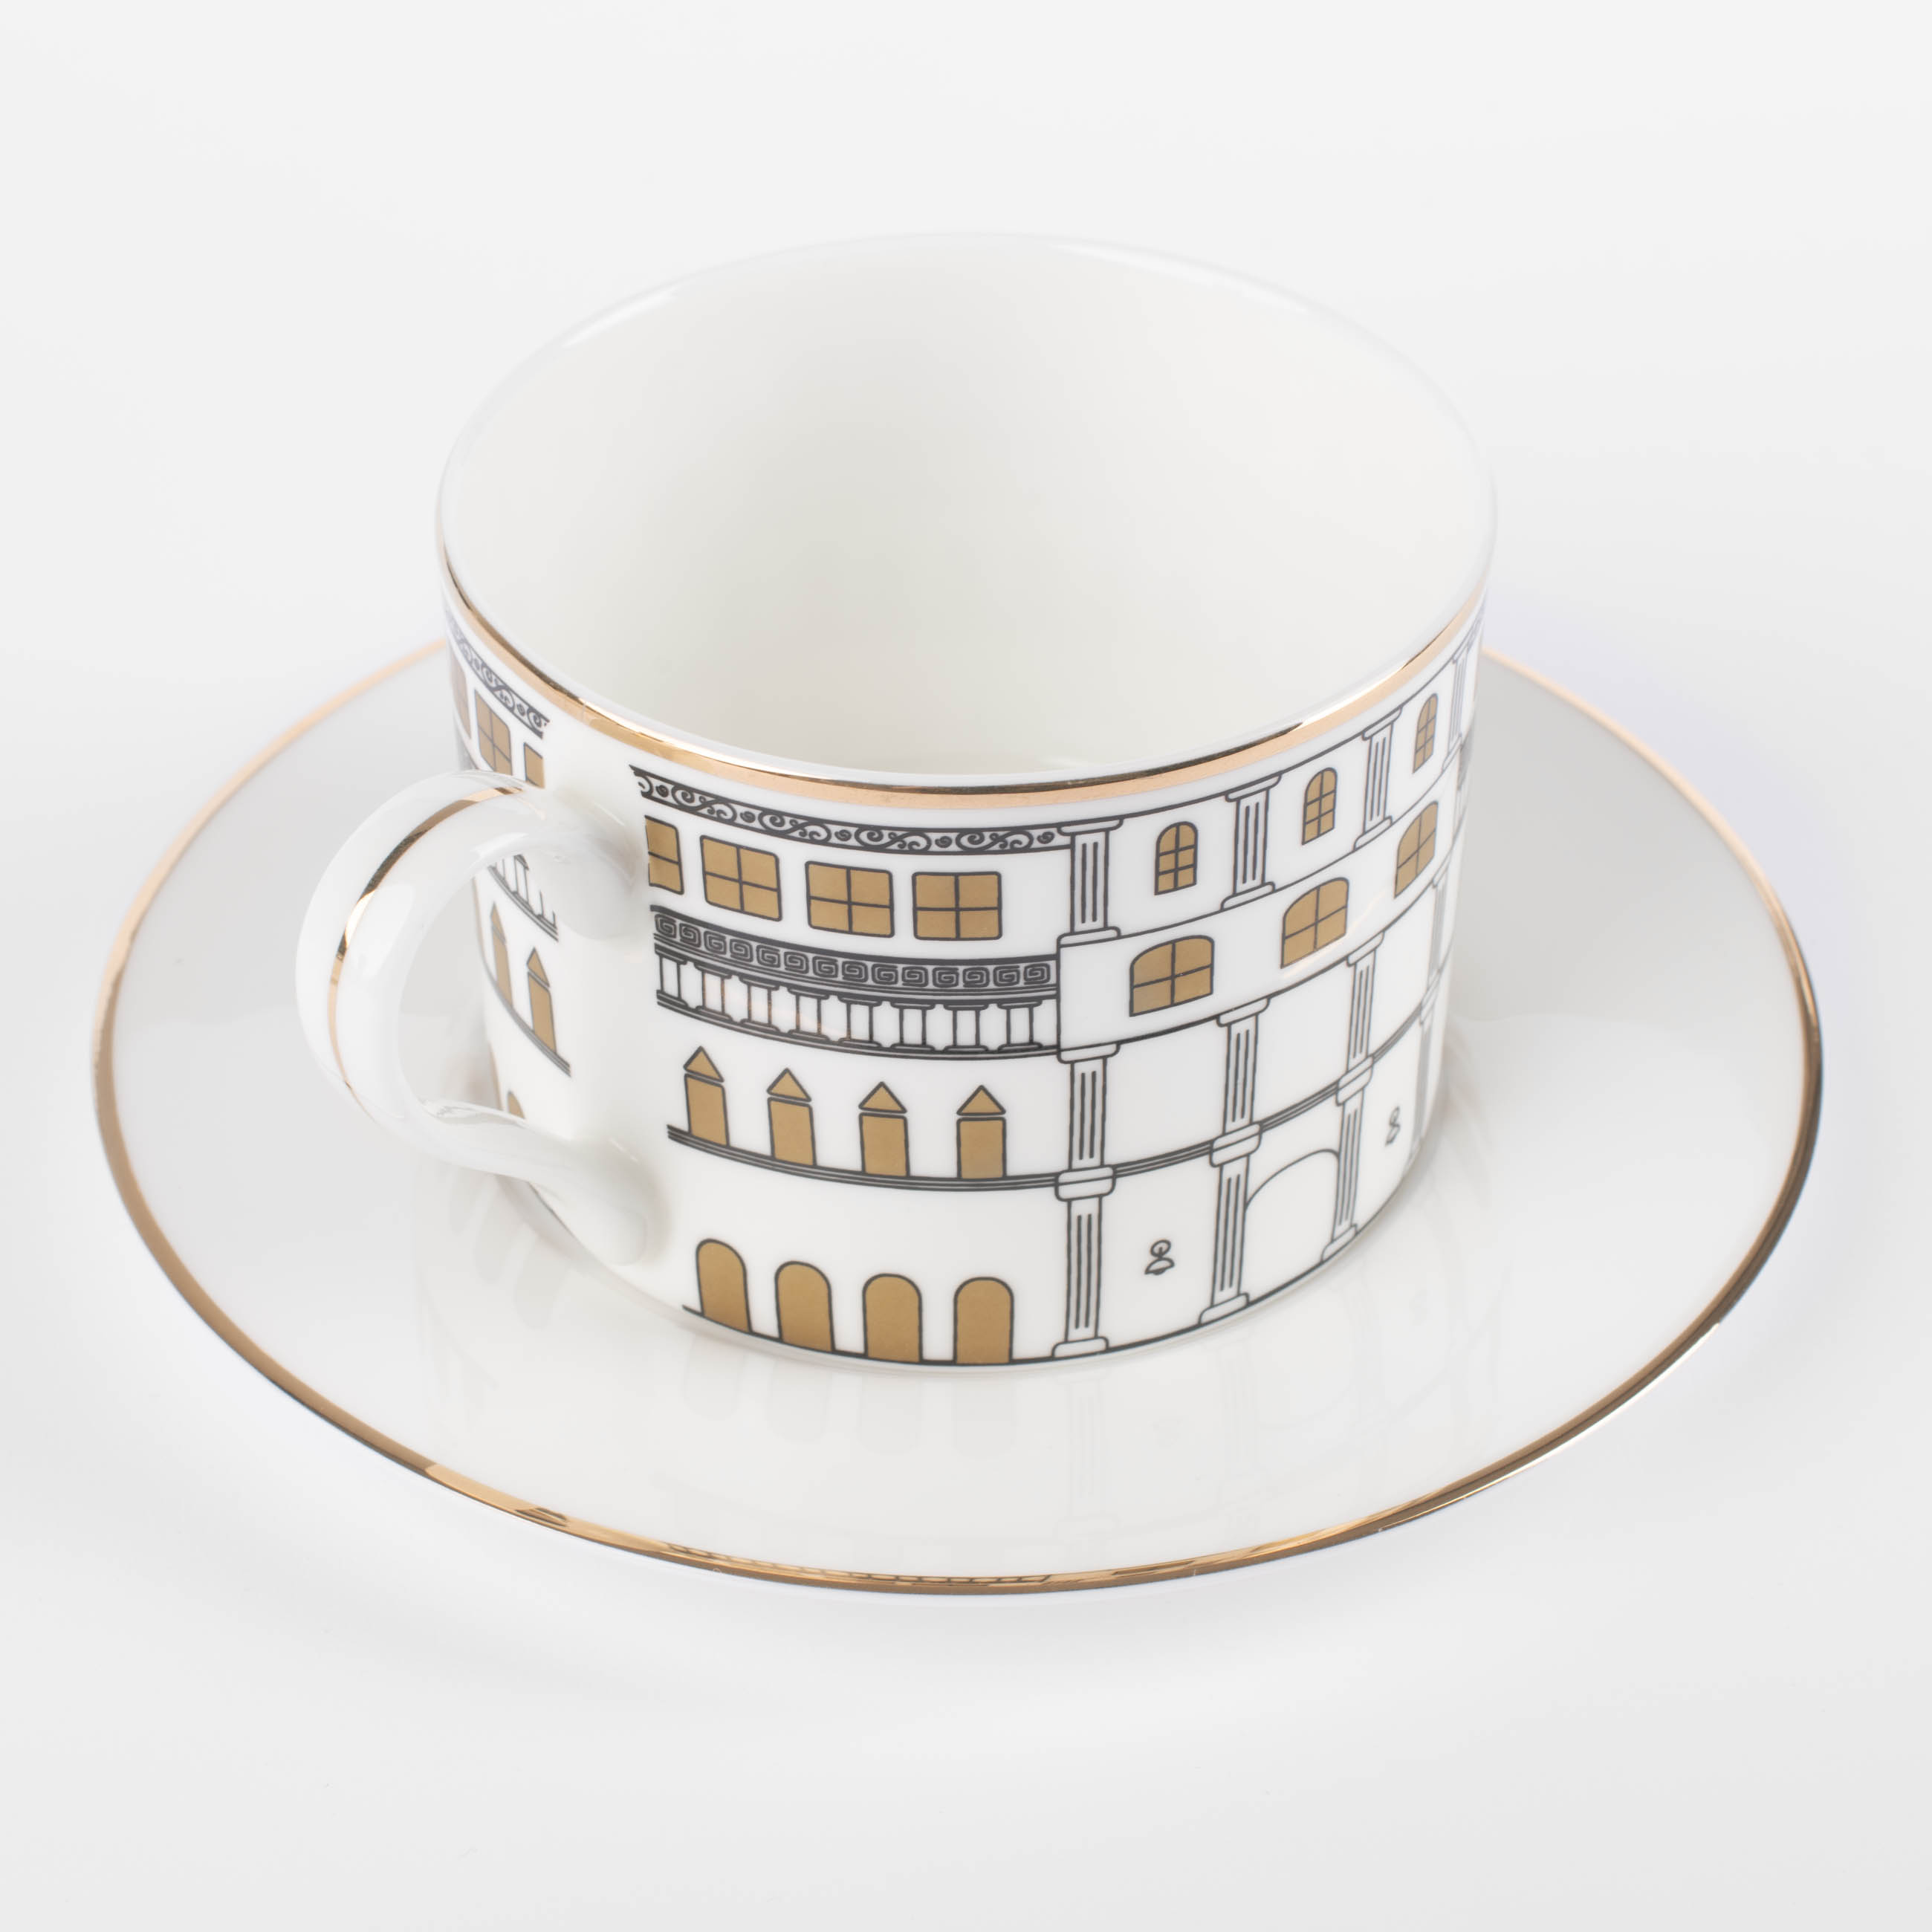 Пара чайная, 1 перс, 2 пр, 330 мл, фарфор F, белая, с золотистым кантом, Дом, House изображение № 2